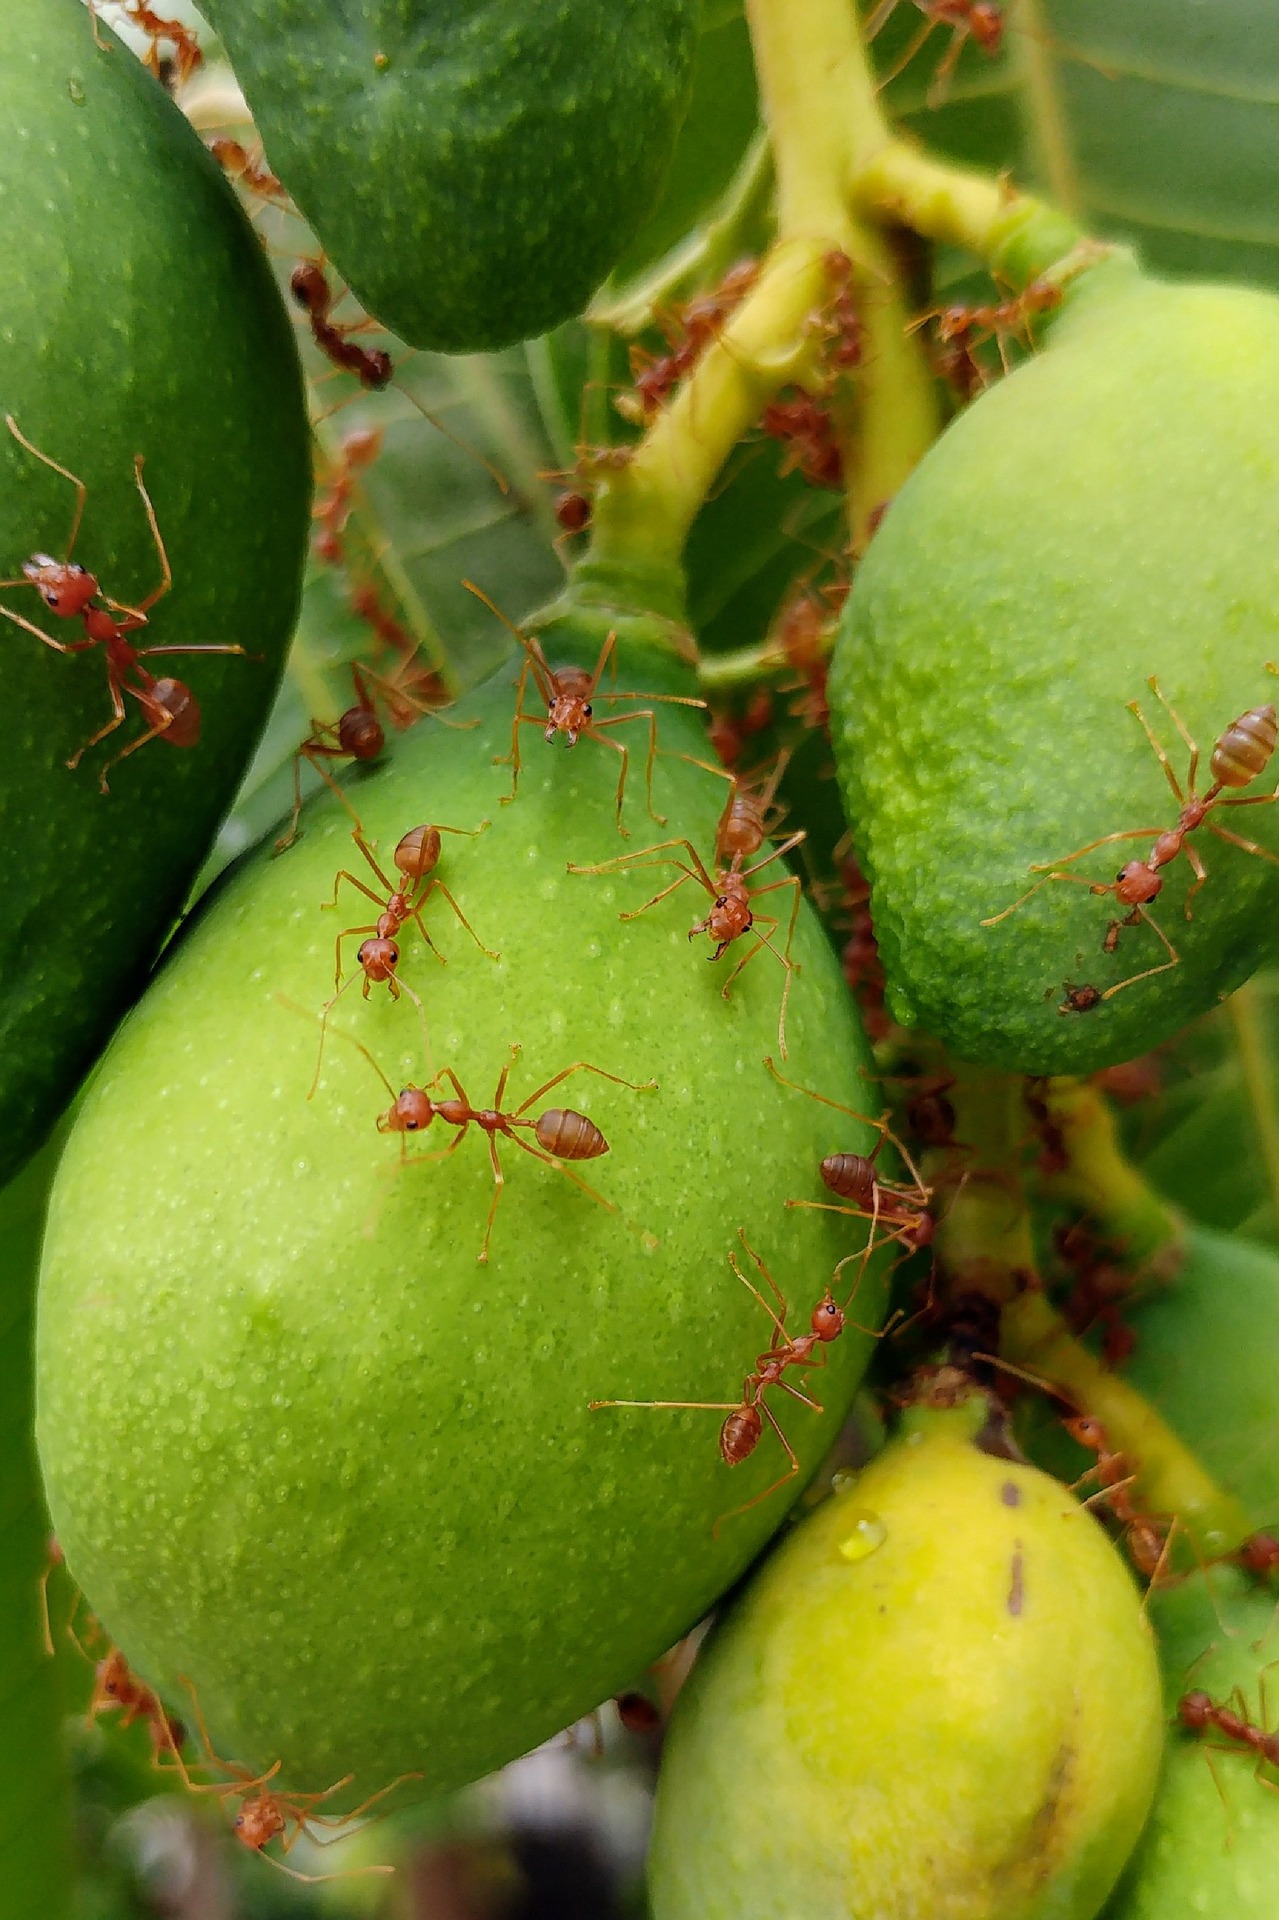 Un grupo de hormigas S. invicta buscando alimento sobre los frutos de un árbol.